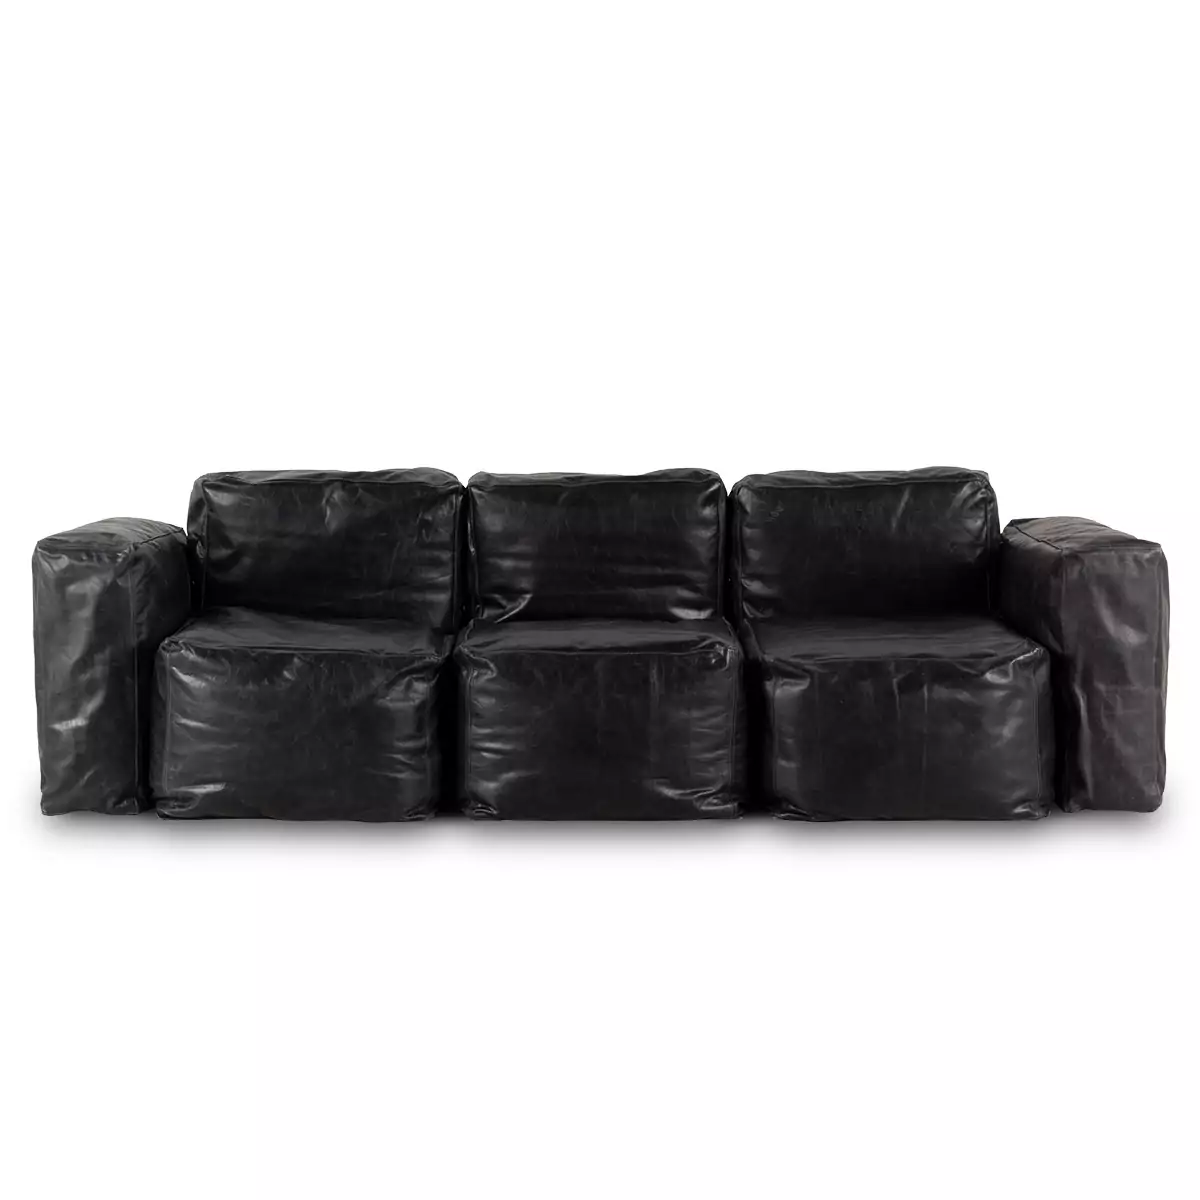 Черный кожаный диван Buffy трехместный от Francisco Segarra - купить за 640 990 руб. в интернет-магазине Barcelona Design